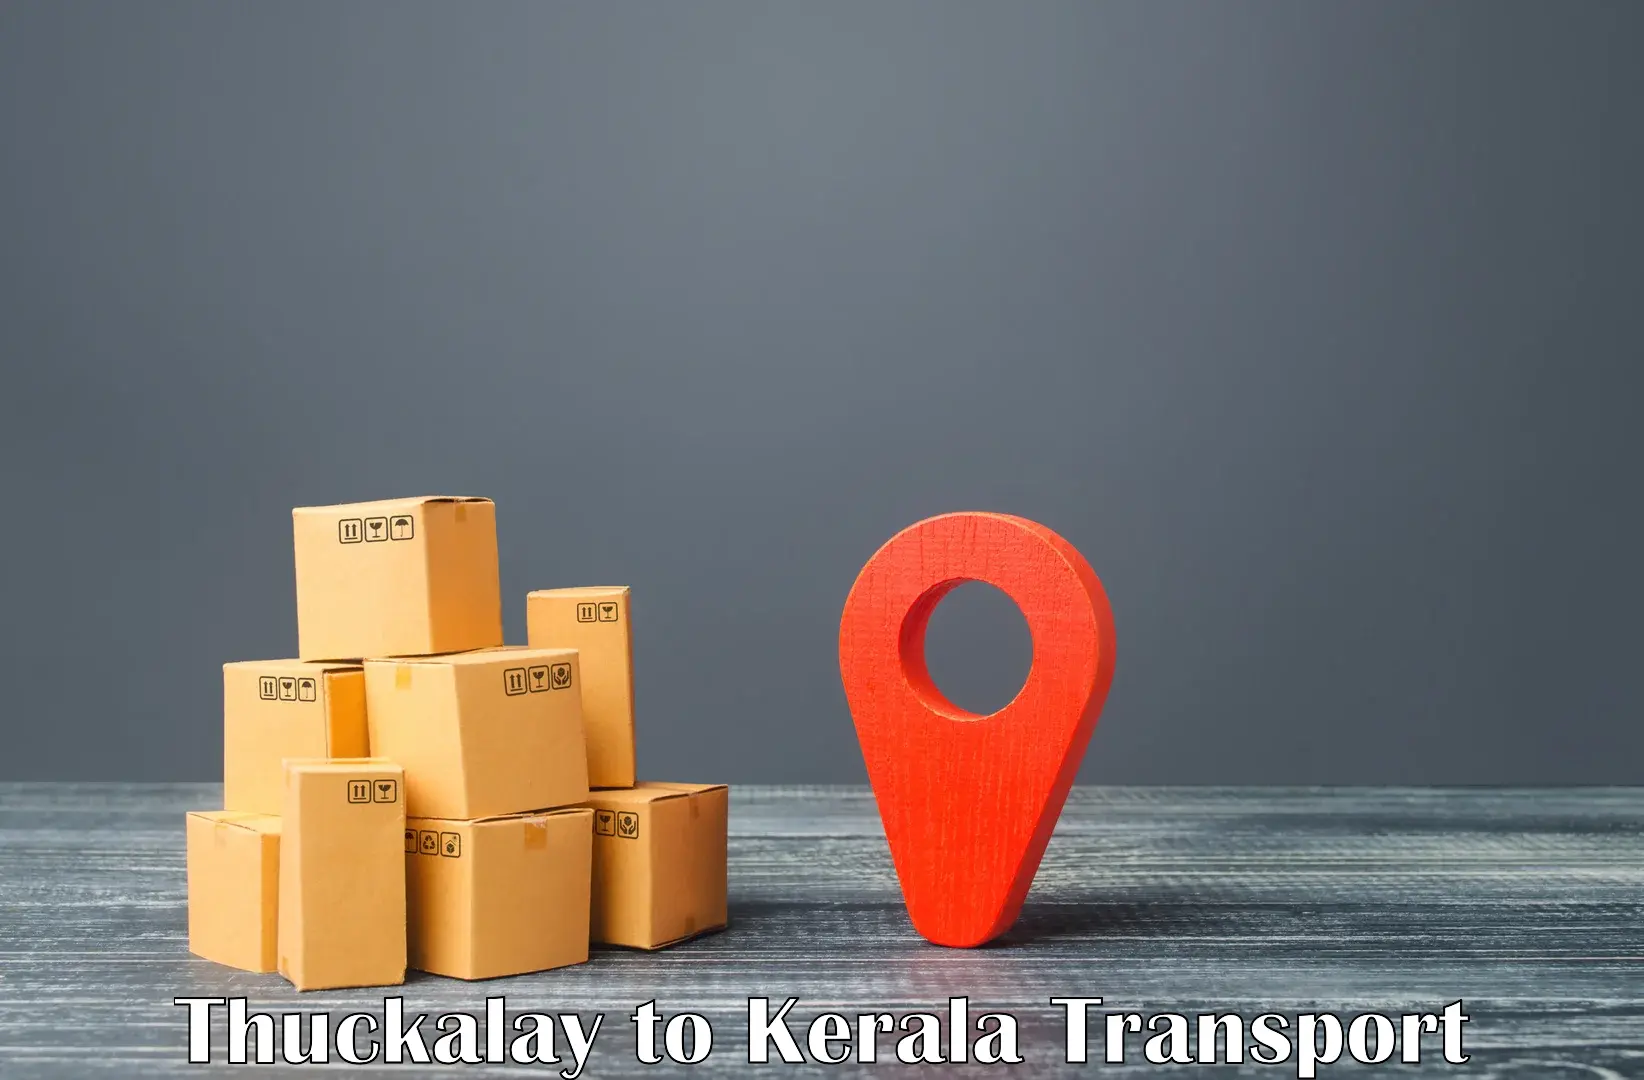 Online transport in Thuckalay to Kochi